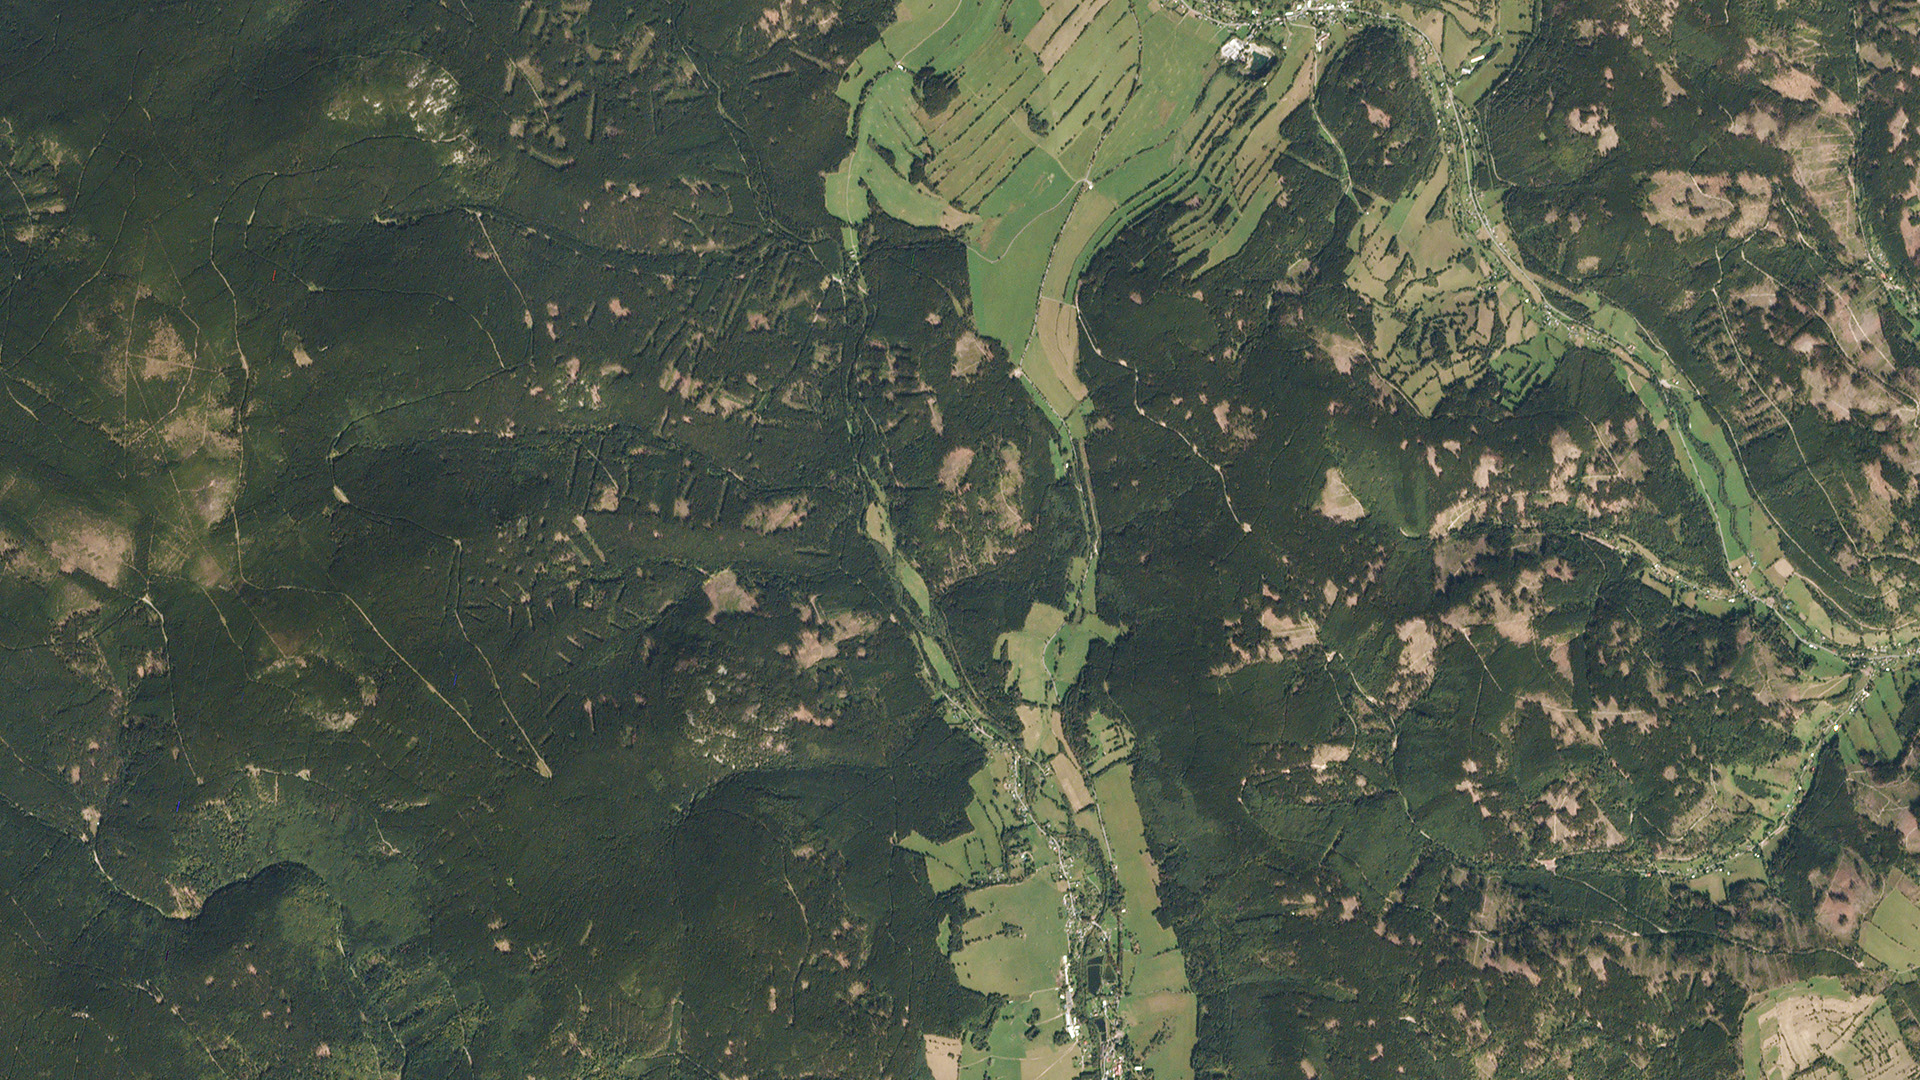 Data z planetoskopu byla využita pro mapování a sledování lesů ČR